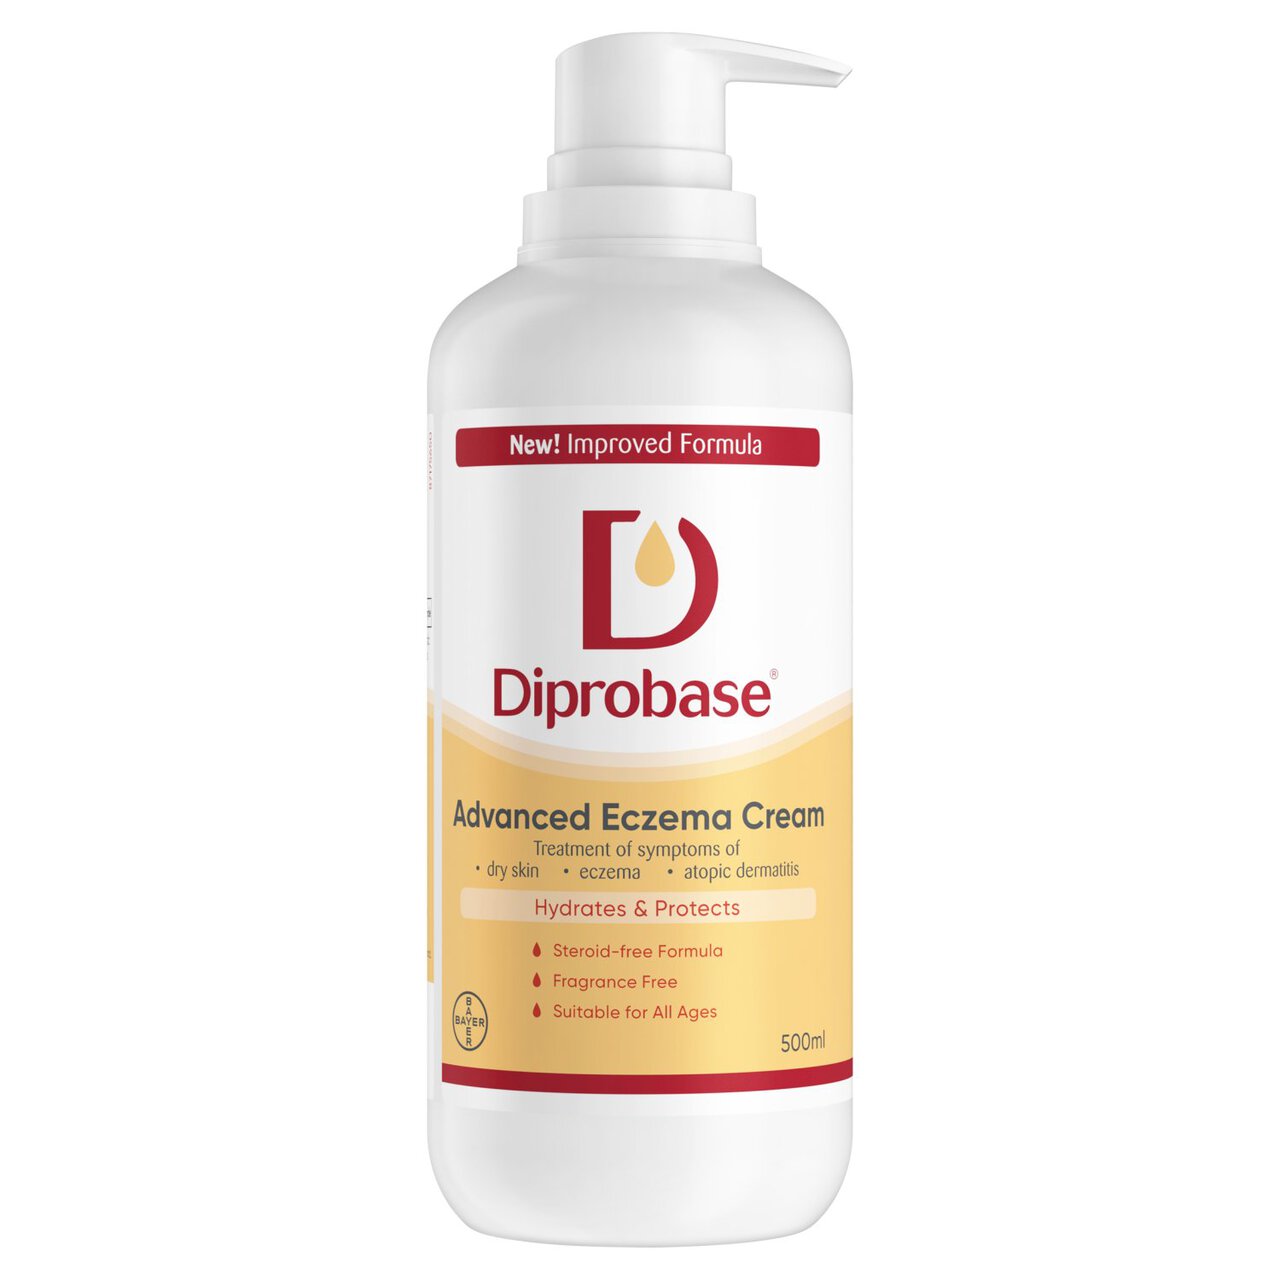 Diprobase Emolient Eczema Dry Skin Cream 500g